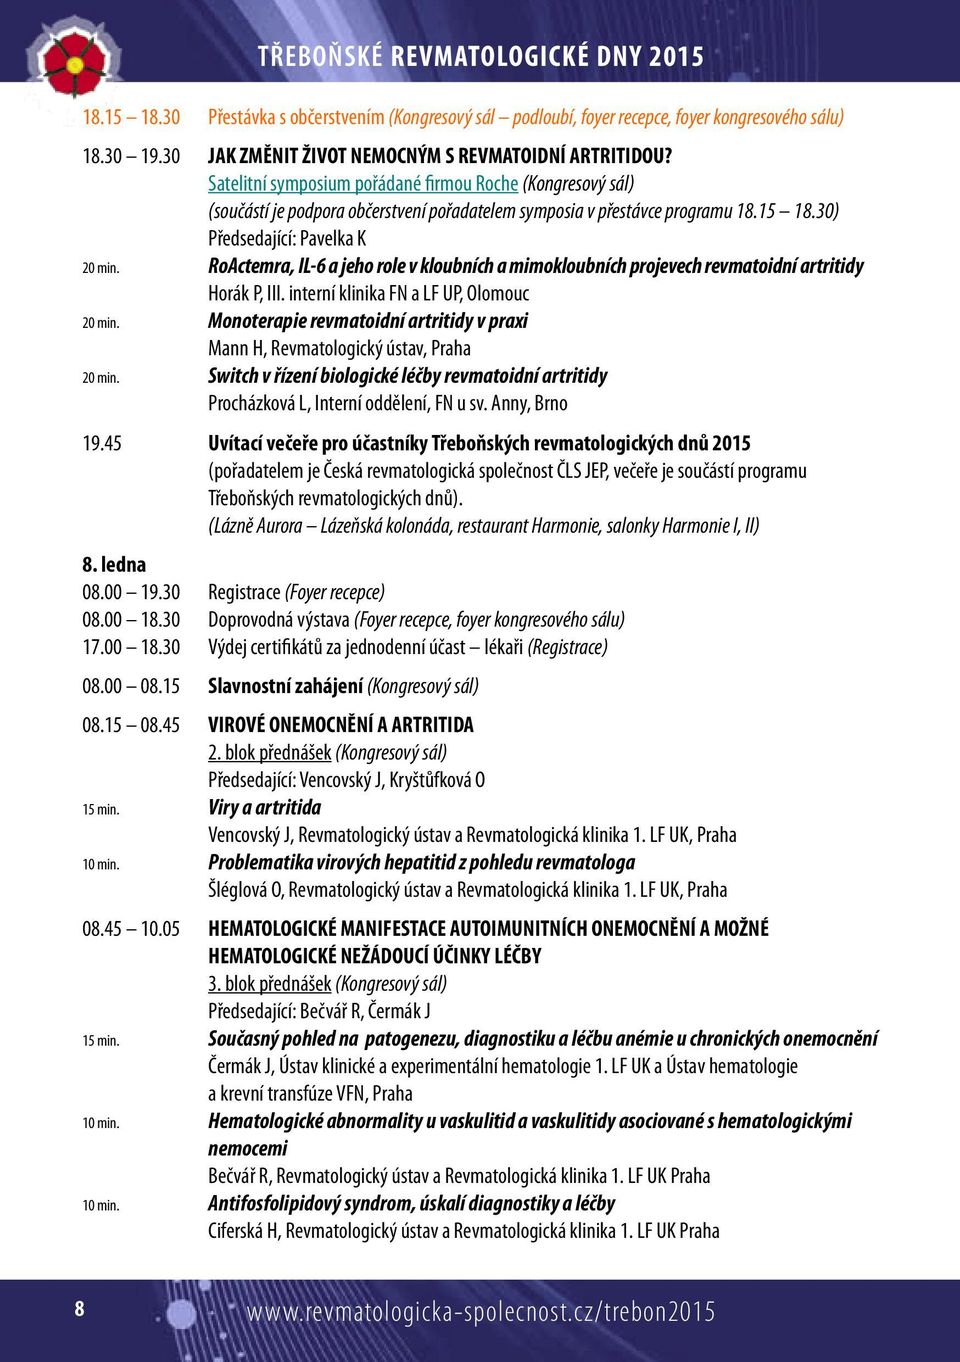 RoActemra, IL-6 a jeho role v kloubních a mimokloubních projevech revmatoidní artritidy Horák P, III. interní klinika FN a LF UP, Olomouc 20 min.